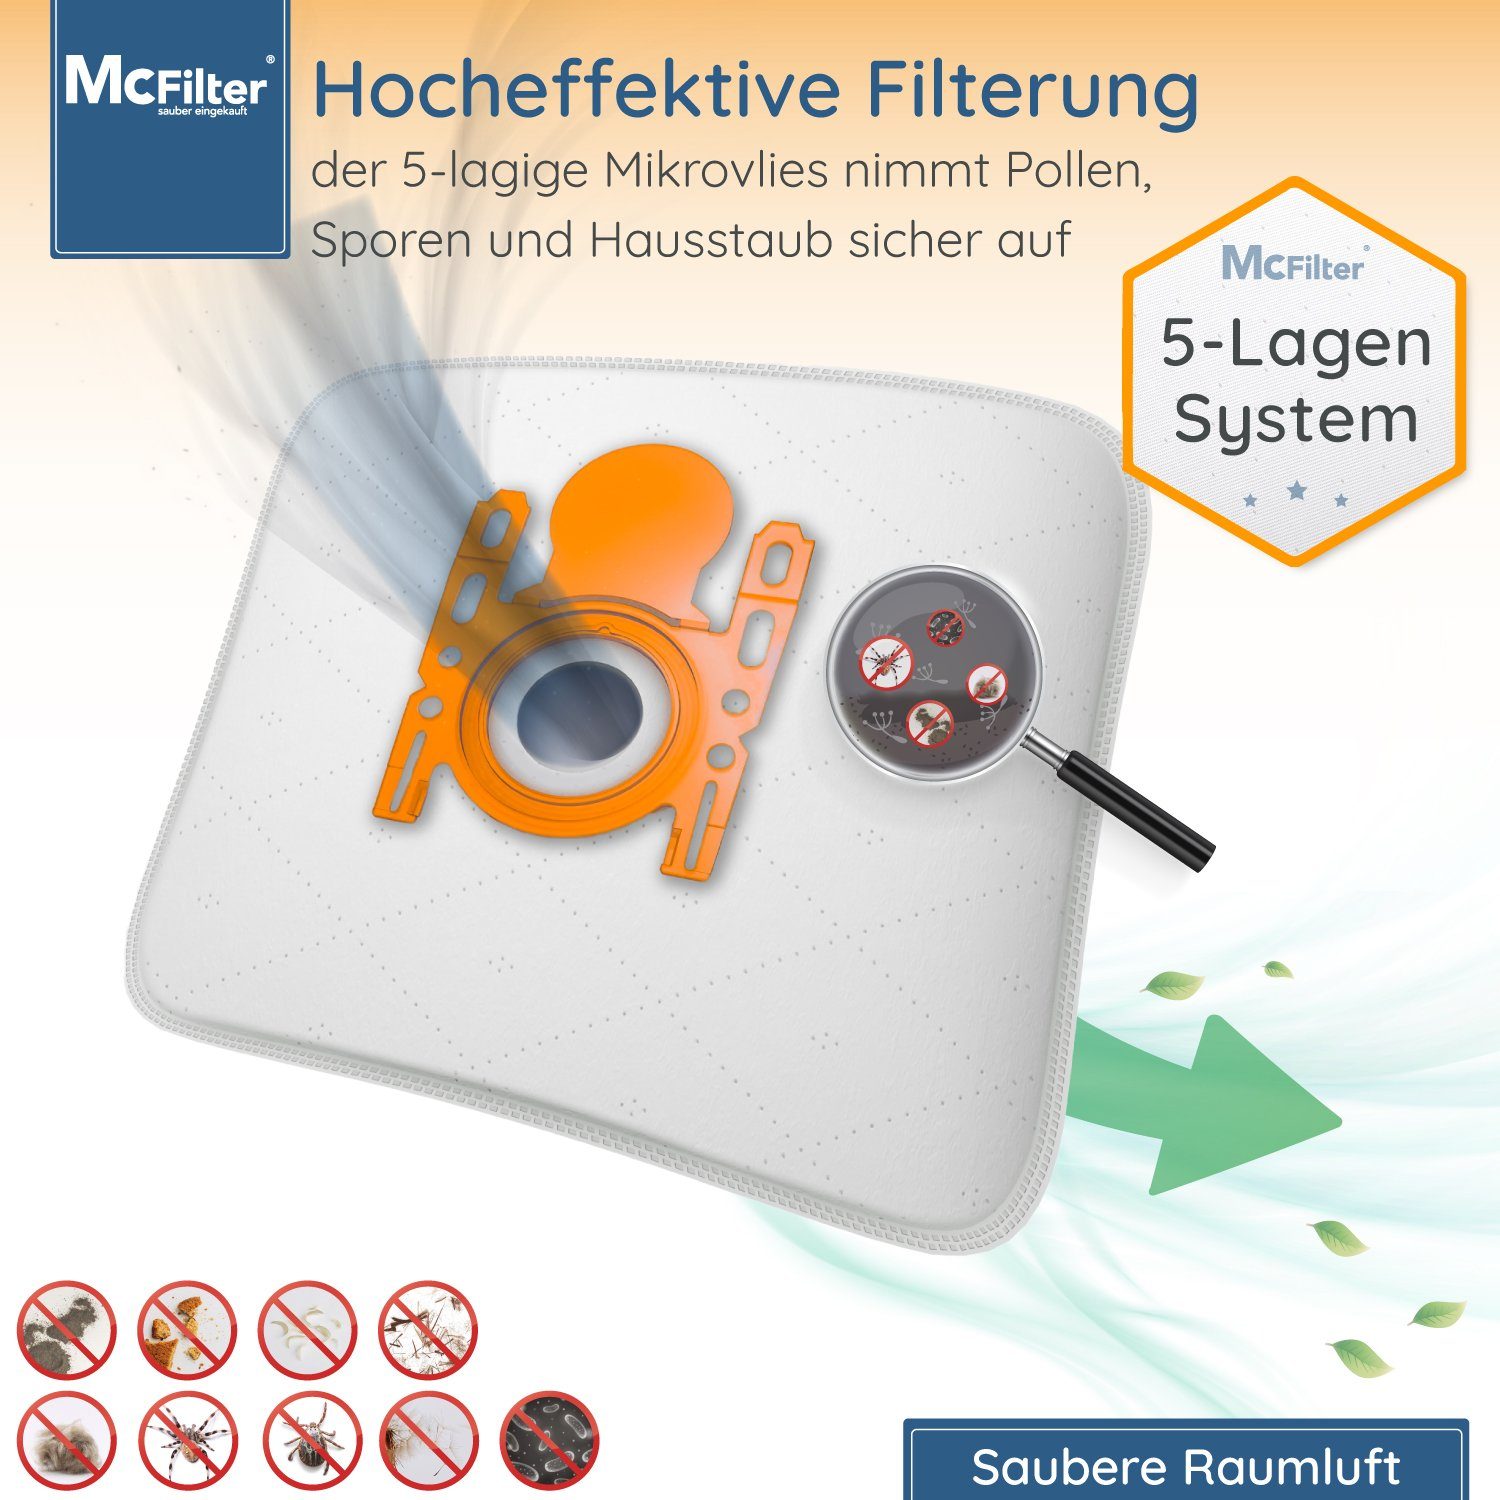 Hygieneverschluss, mit passend inkl. McFilter VSZ3XTRM11 Siemens für Staubsaugerbeutel, 5-lagiger Staubsauger, 10 Filter St., Staubbeutel